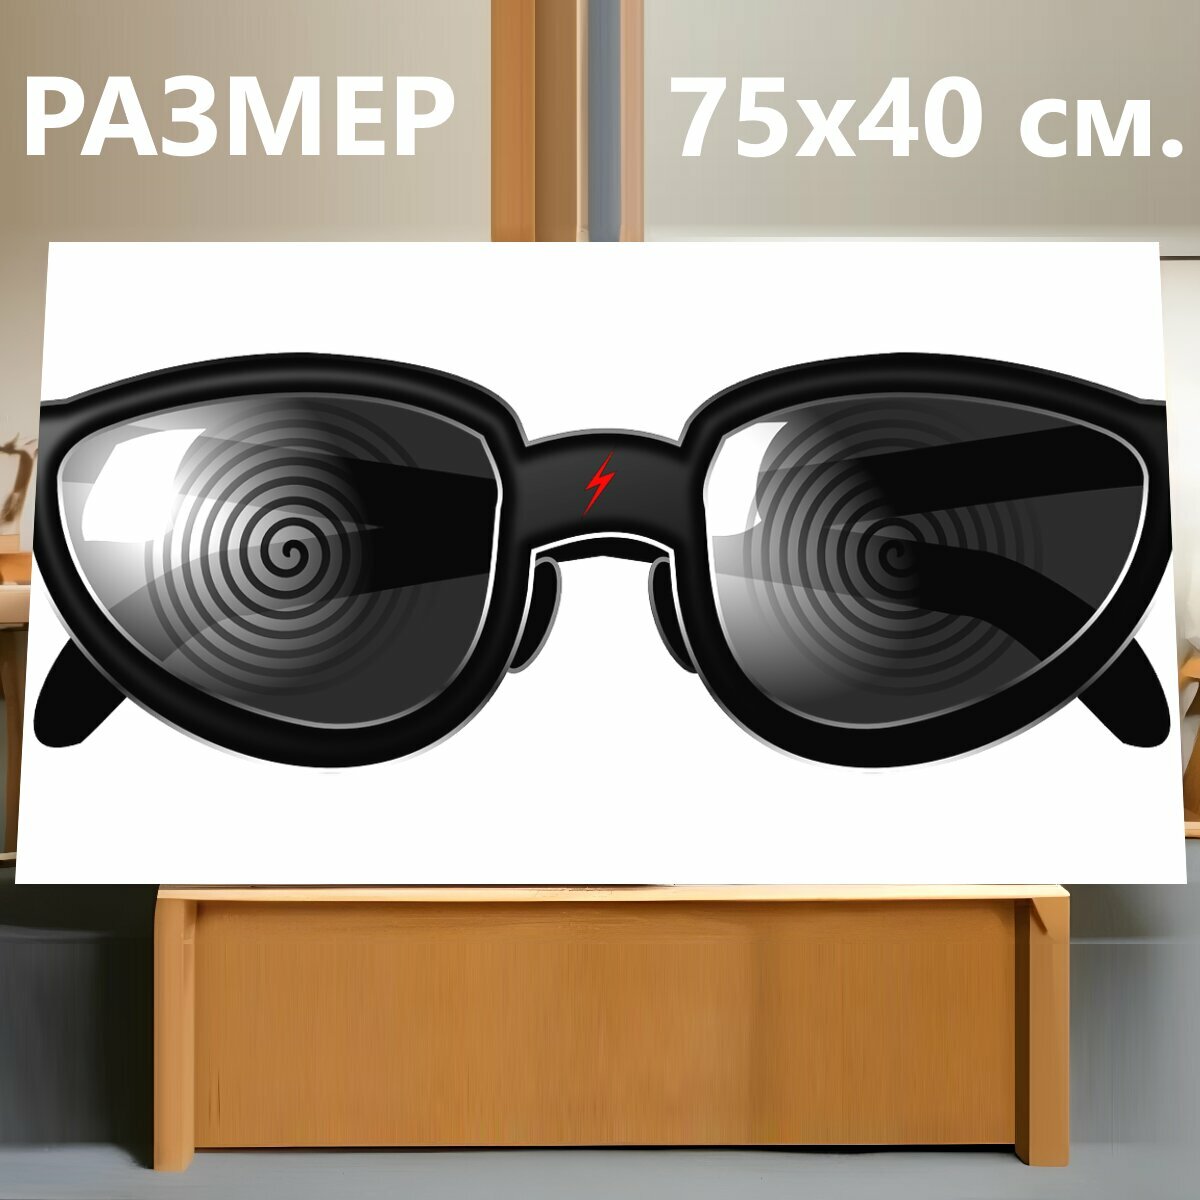 Картина на холсте "Очки, спецификации, солнечные очки" на подрамнике 75х40 см. для интерьера